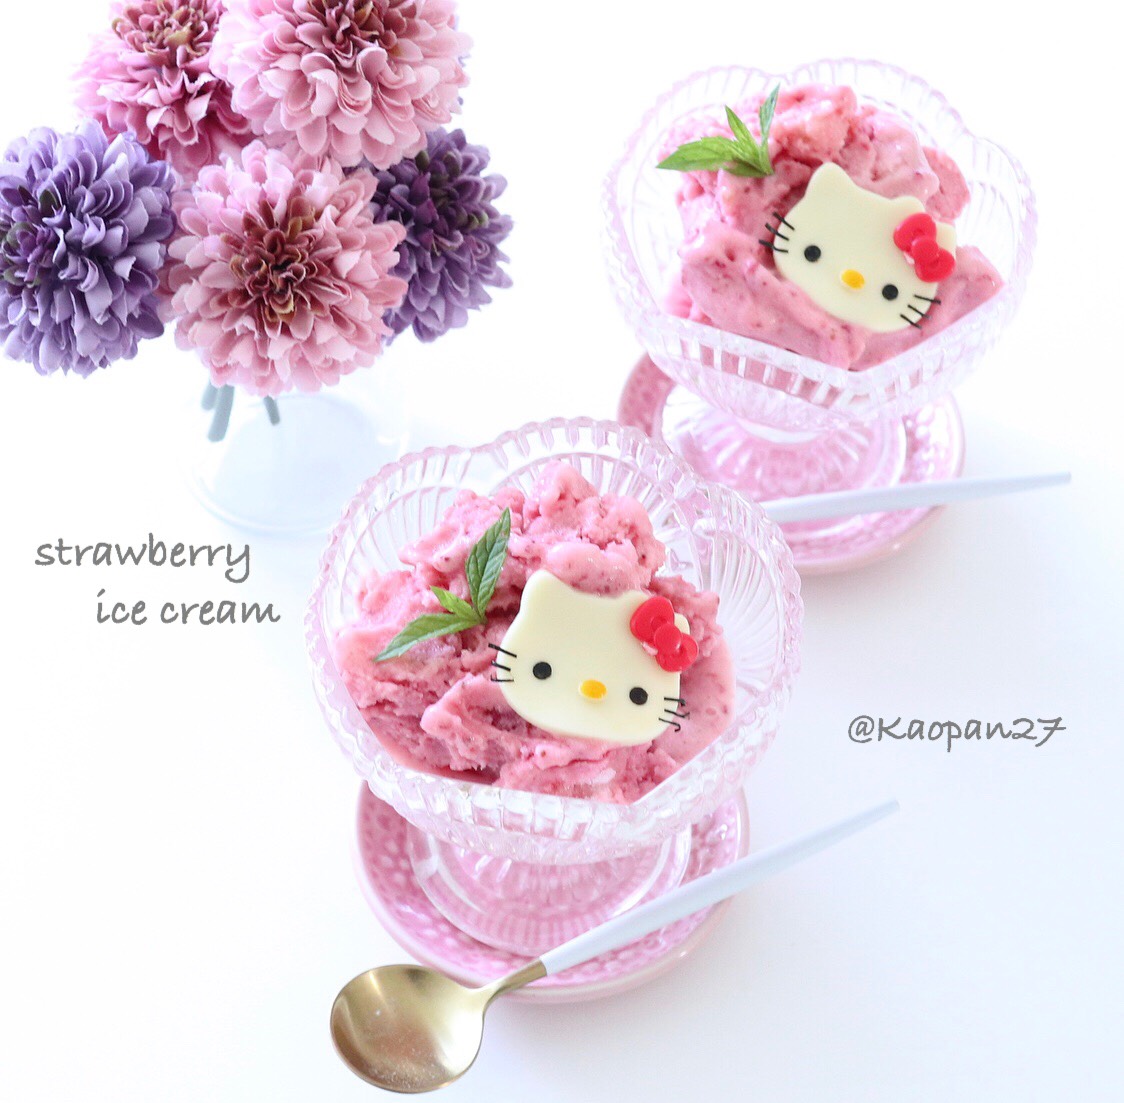 キティちゃんいちごアイスレシピ Hello Kitty Strawberry Ice Cream Recipe 凱蒂貓食譜7